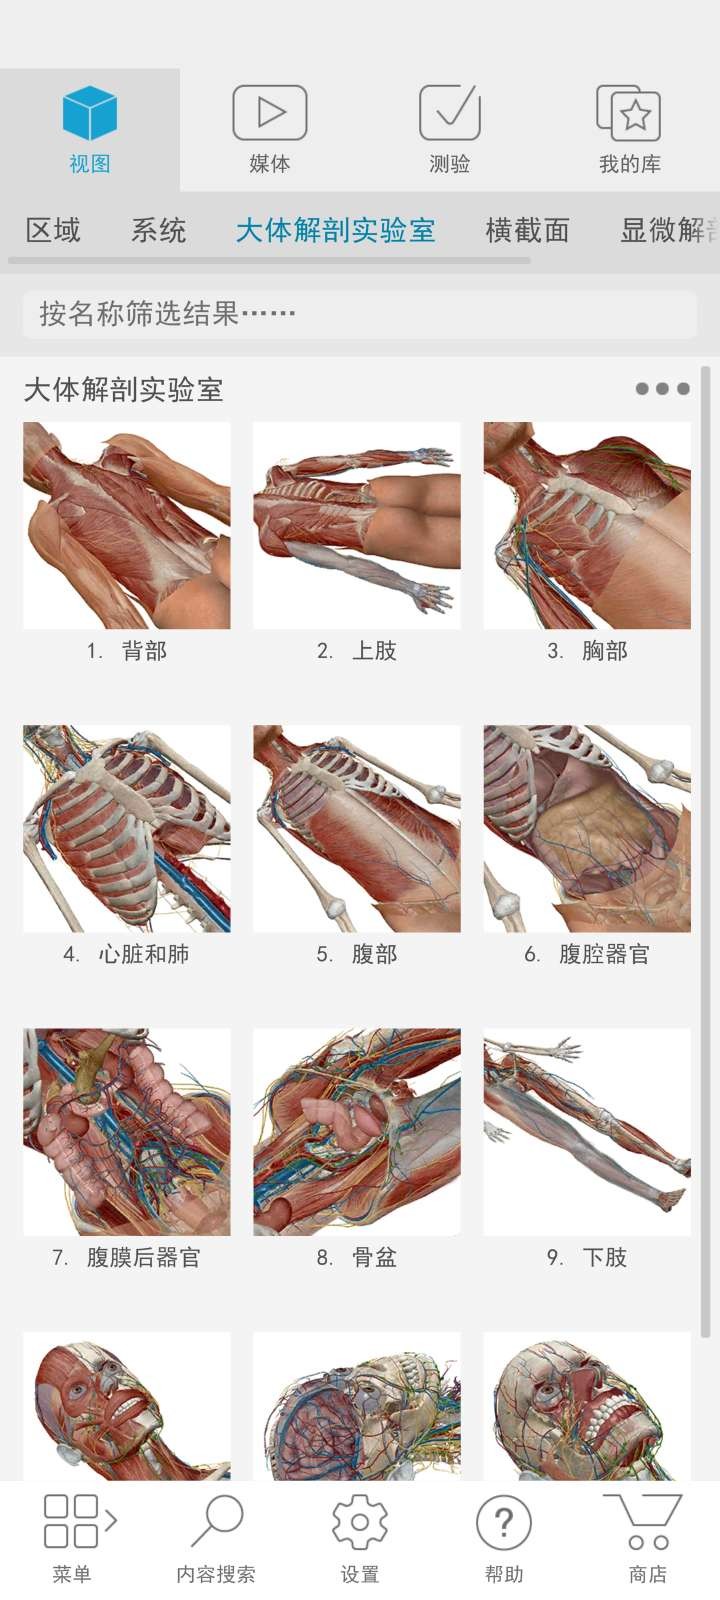 Atlas人体解剖学图谱 1